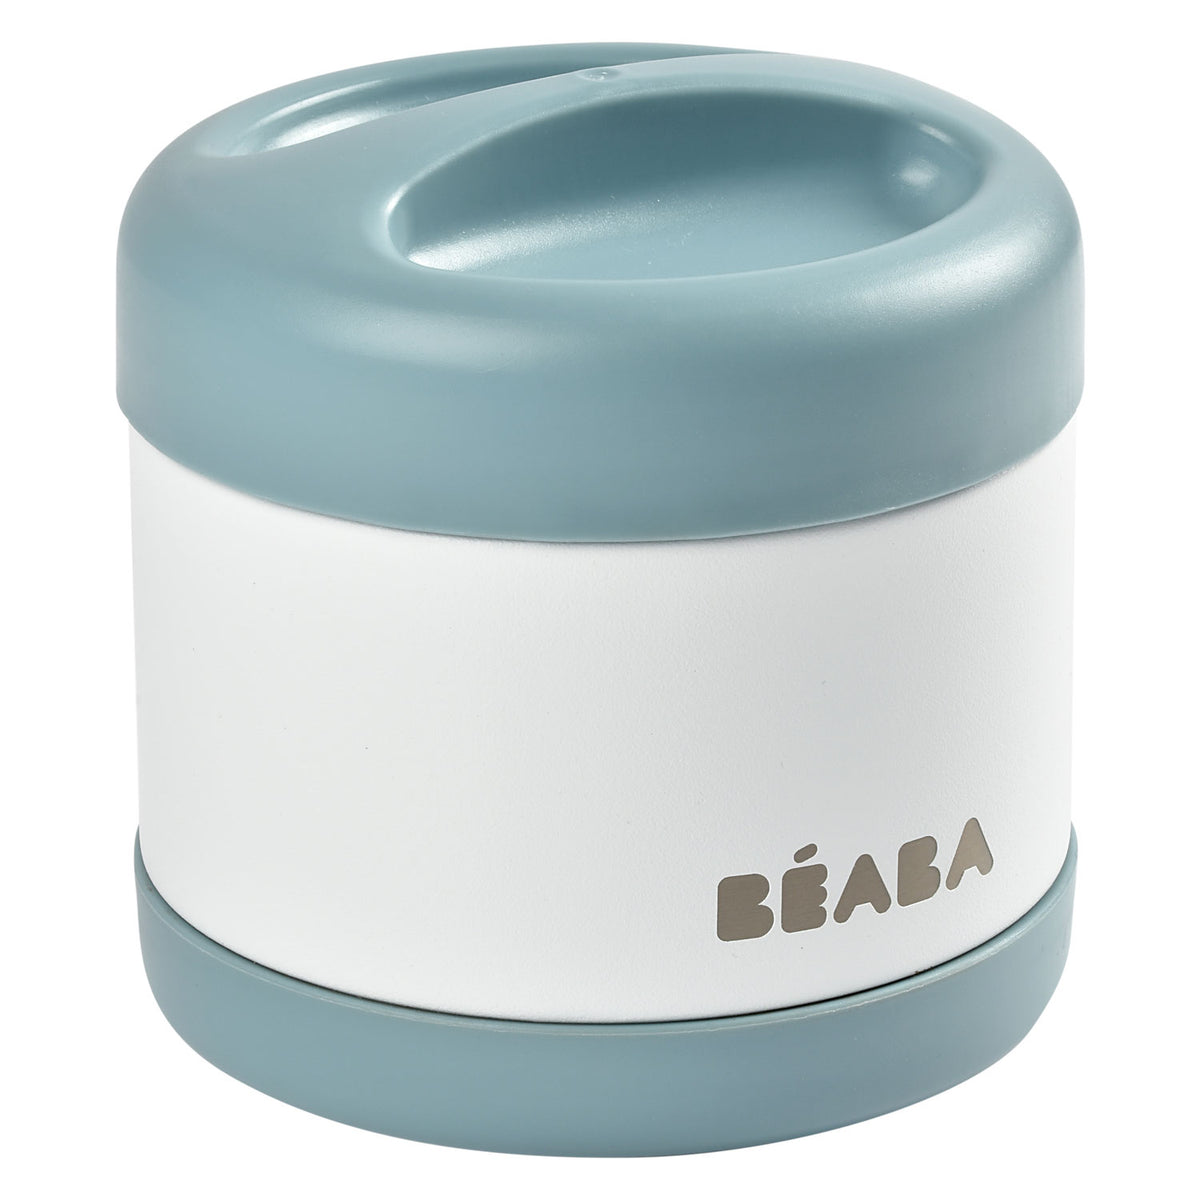 Beaba Thermobehälter aus Edelstahl 500ml blau/weiss